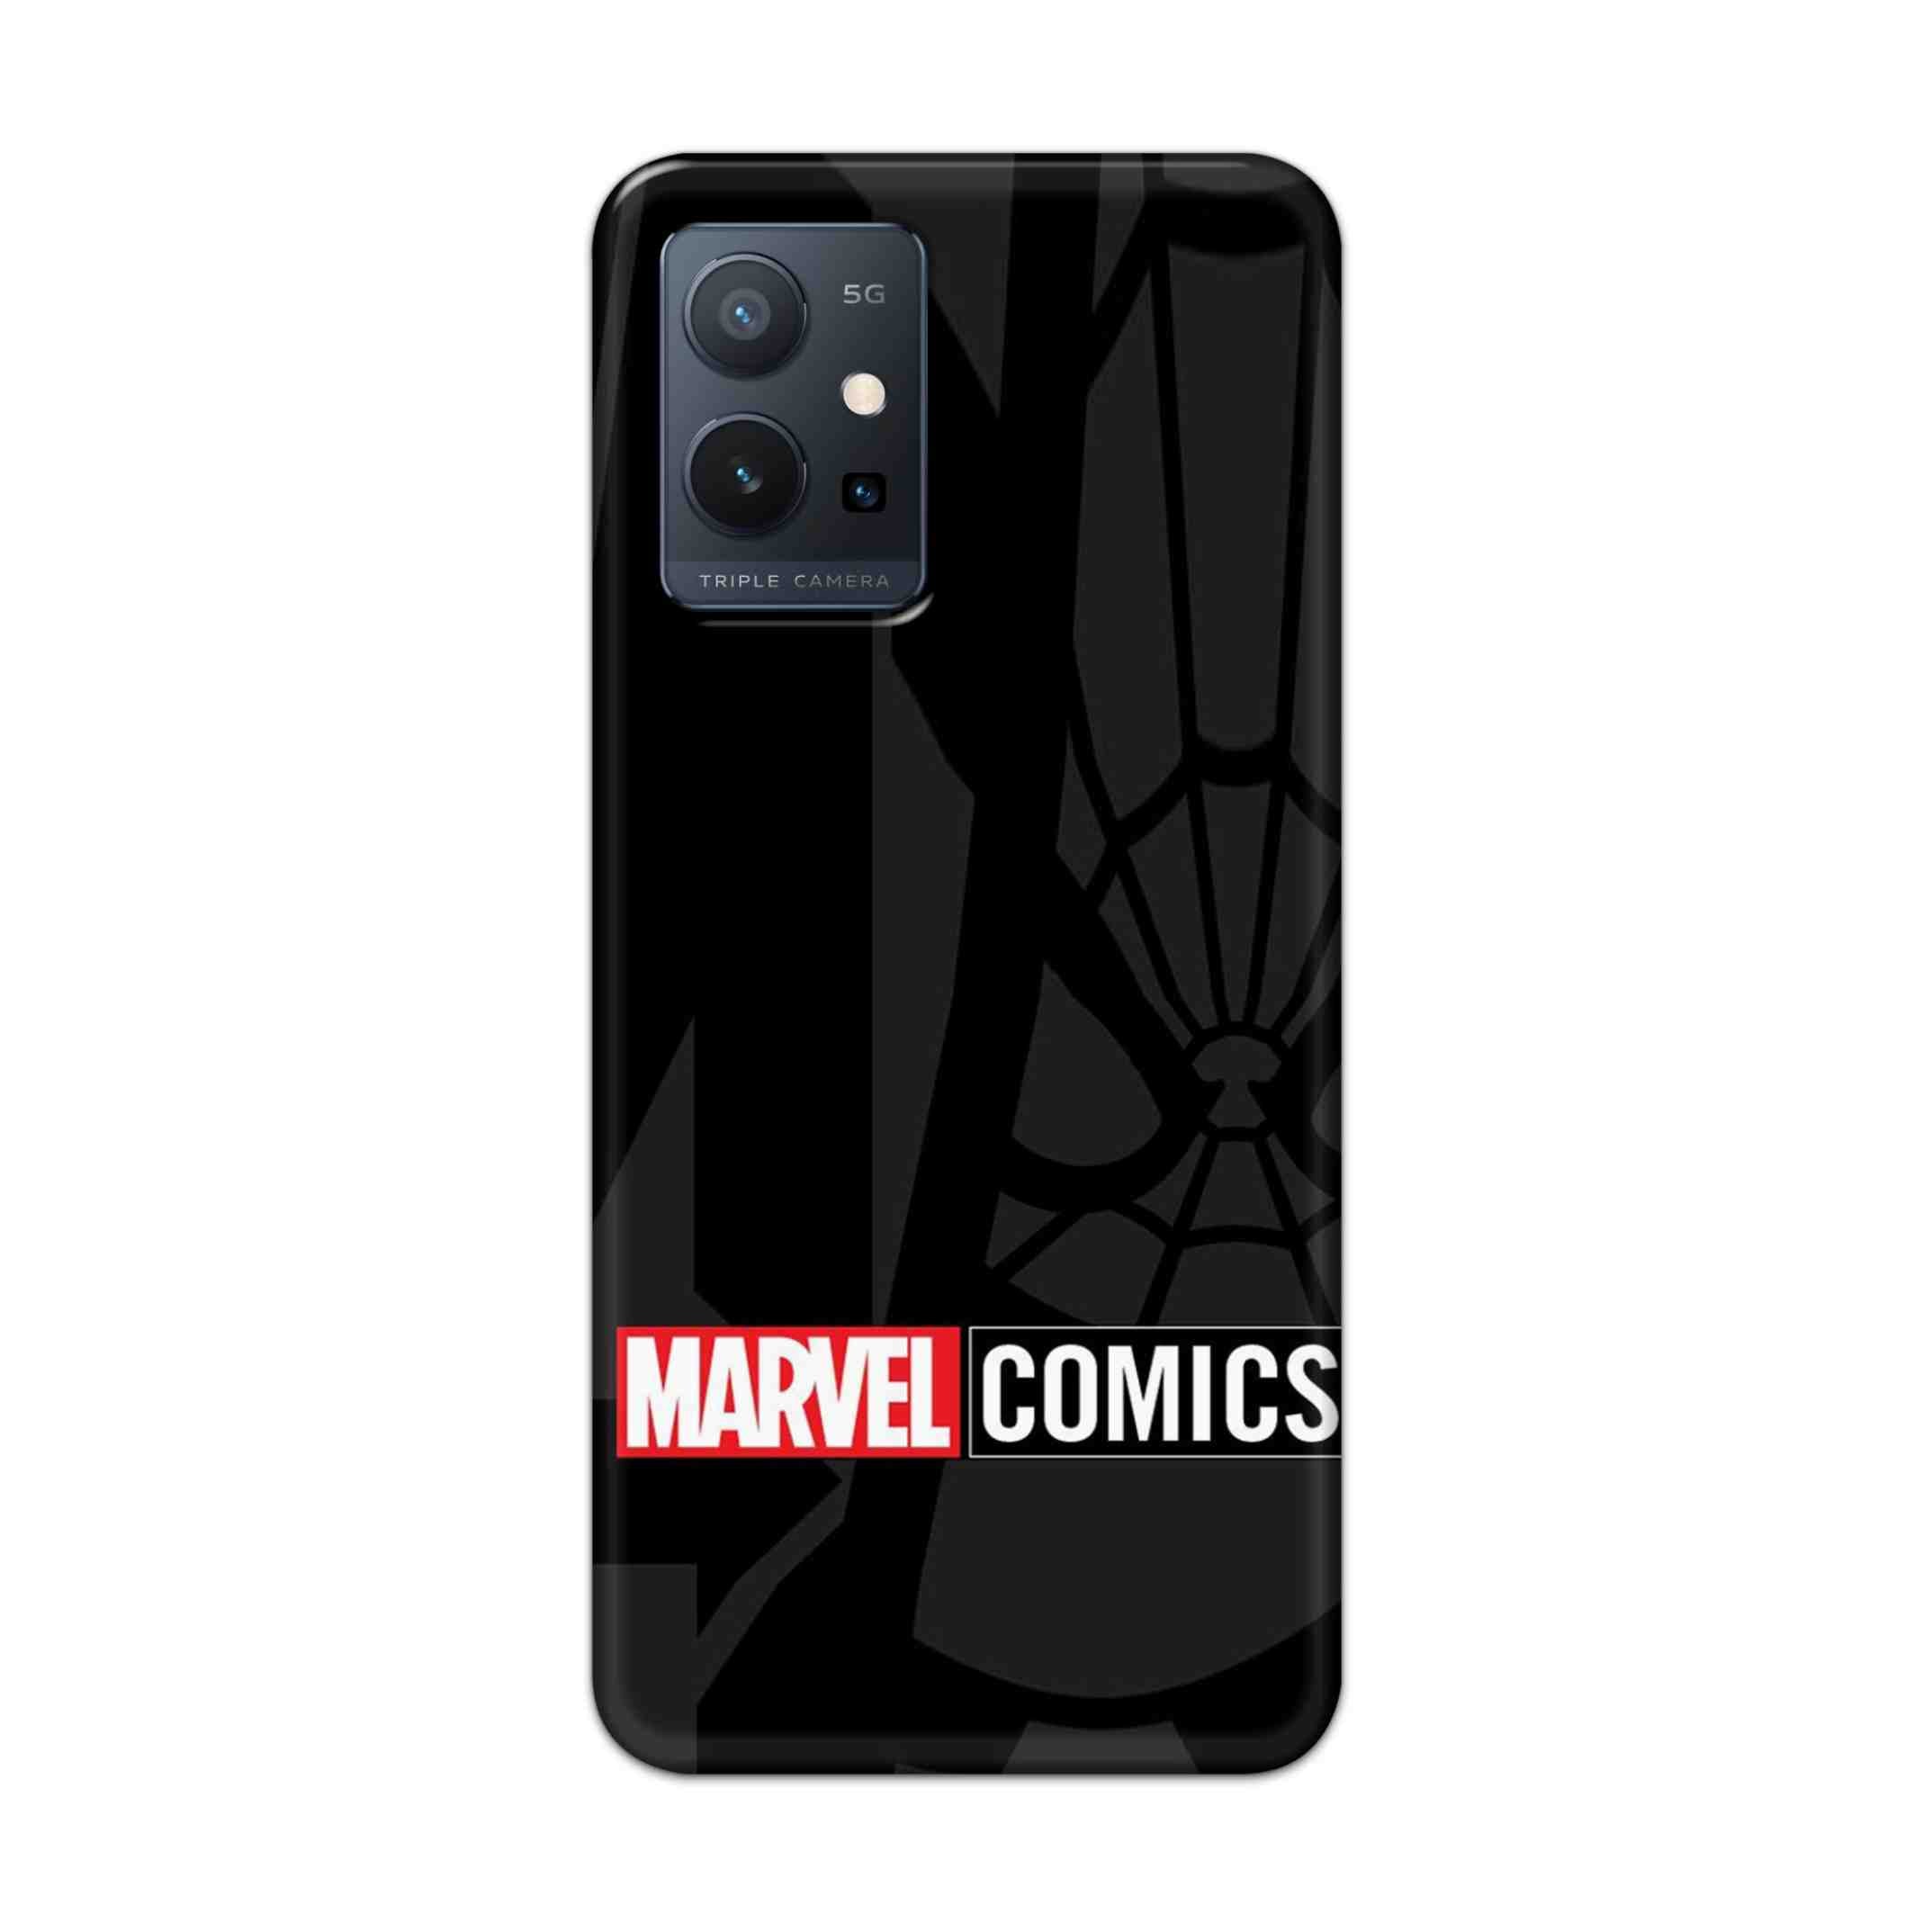 Buy Marvel Comics Hard Back Mobile Phone Case Cover For Vivo T1 5G Online